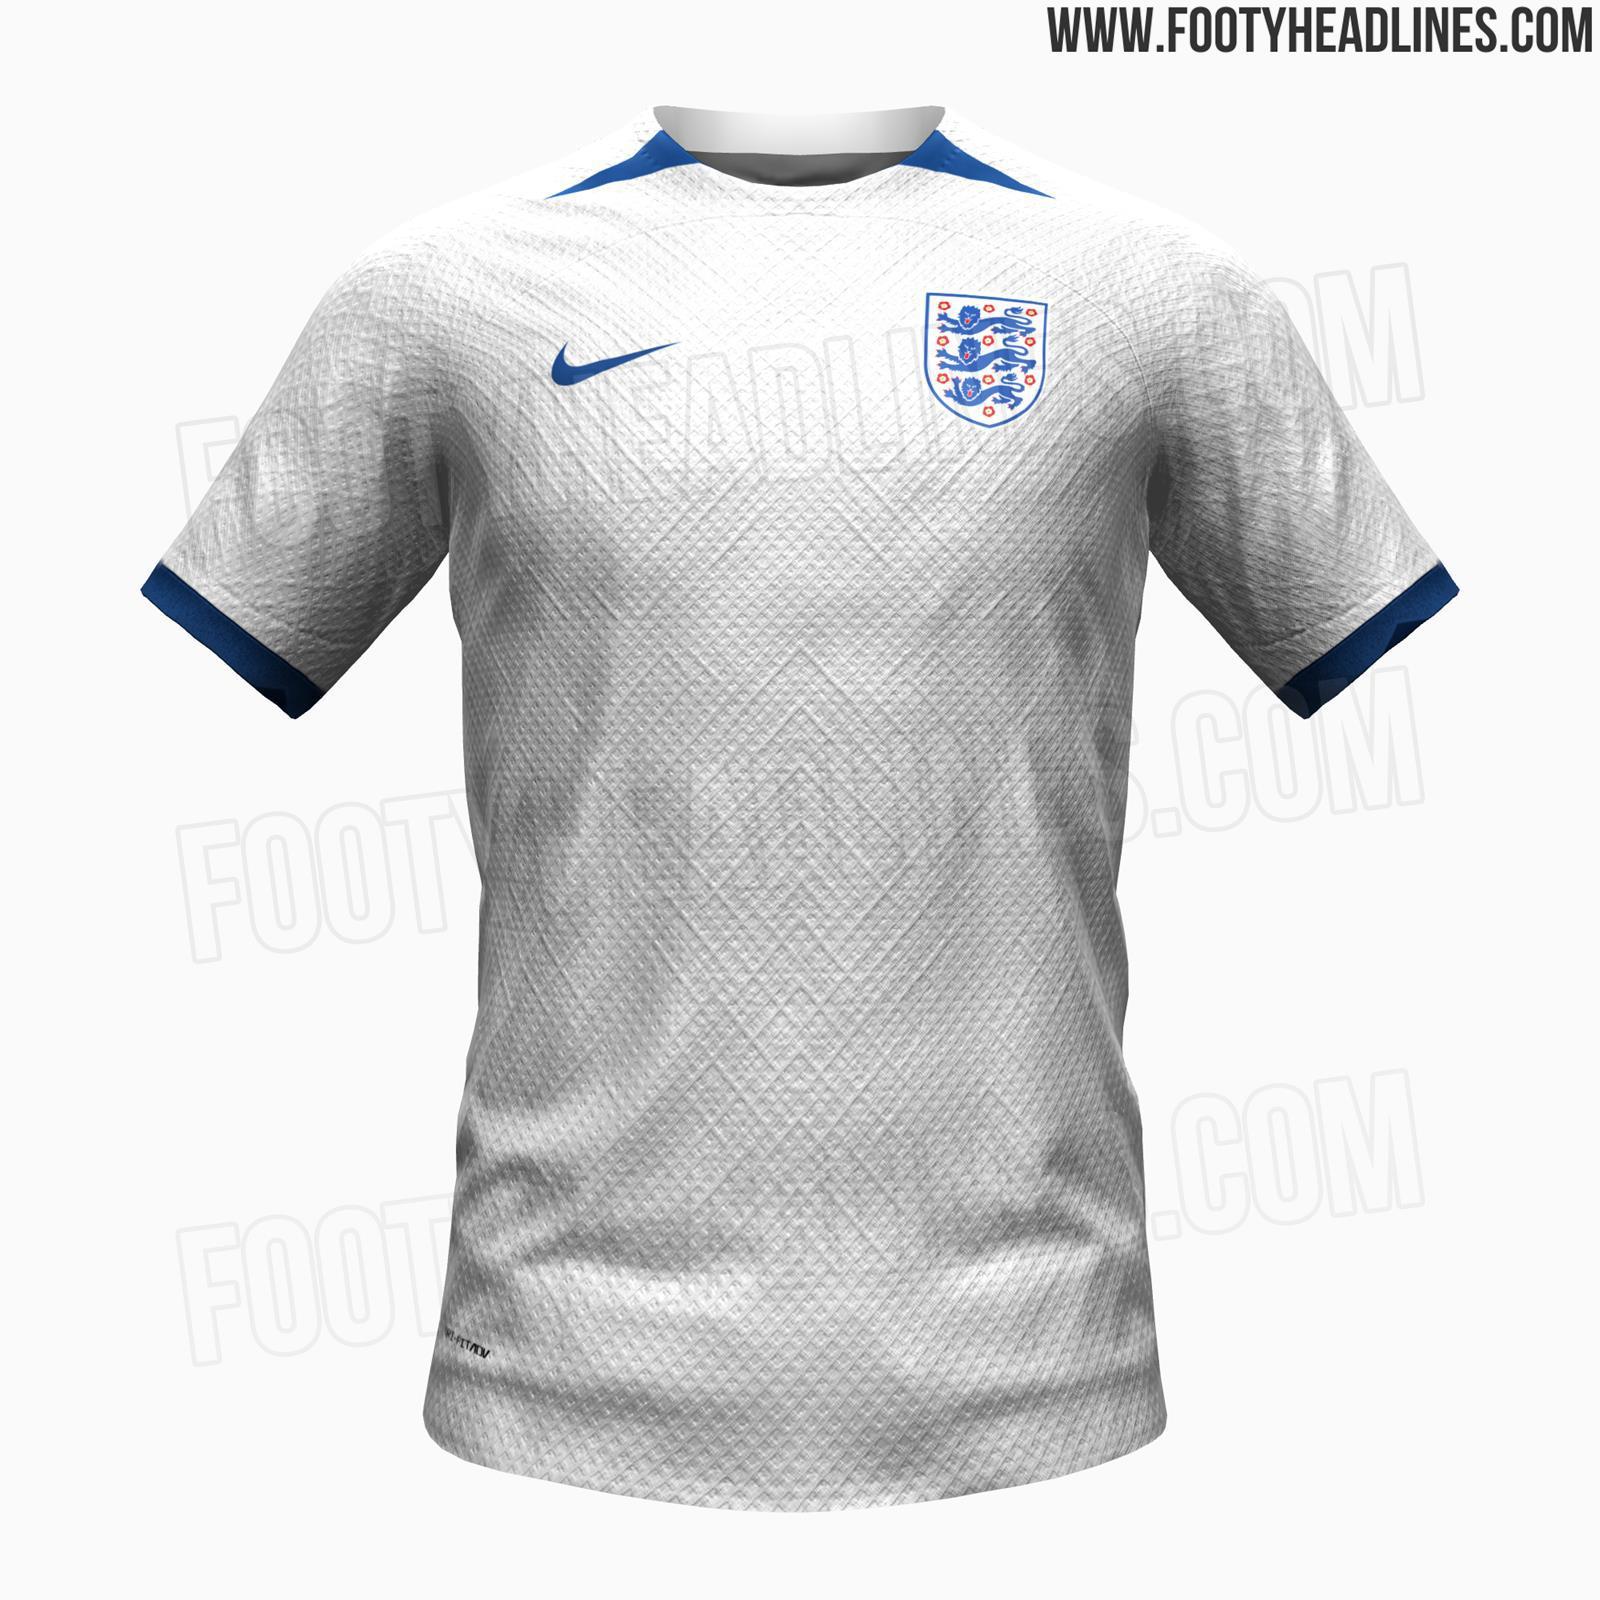 英格兰女足今夏世界杯主场球衣曝光，主白色搭配蓝色细节设计，简约风格。#三狮军团#